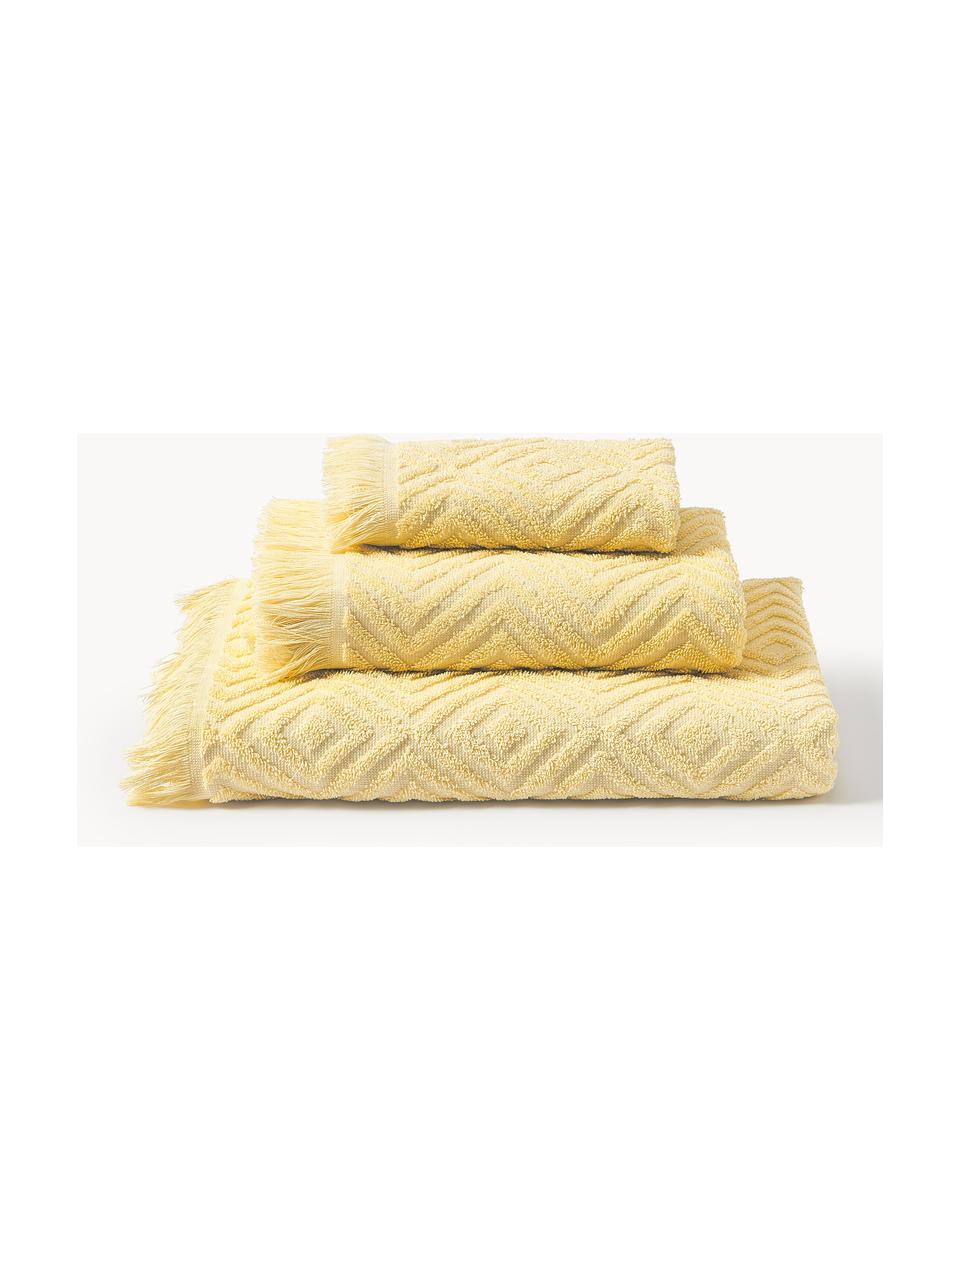 Lot de serviettes de bain texturées Jacqui, tailles variées, Jaune clair, 3 éléments (1 serviette invité, 1 serviette de toilette et 1 drap de bain)